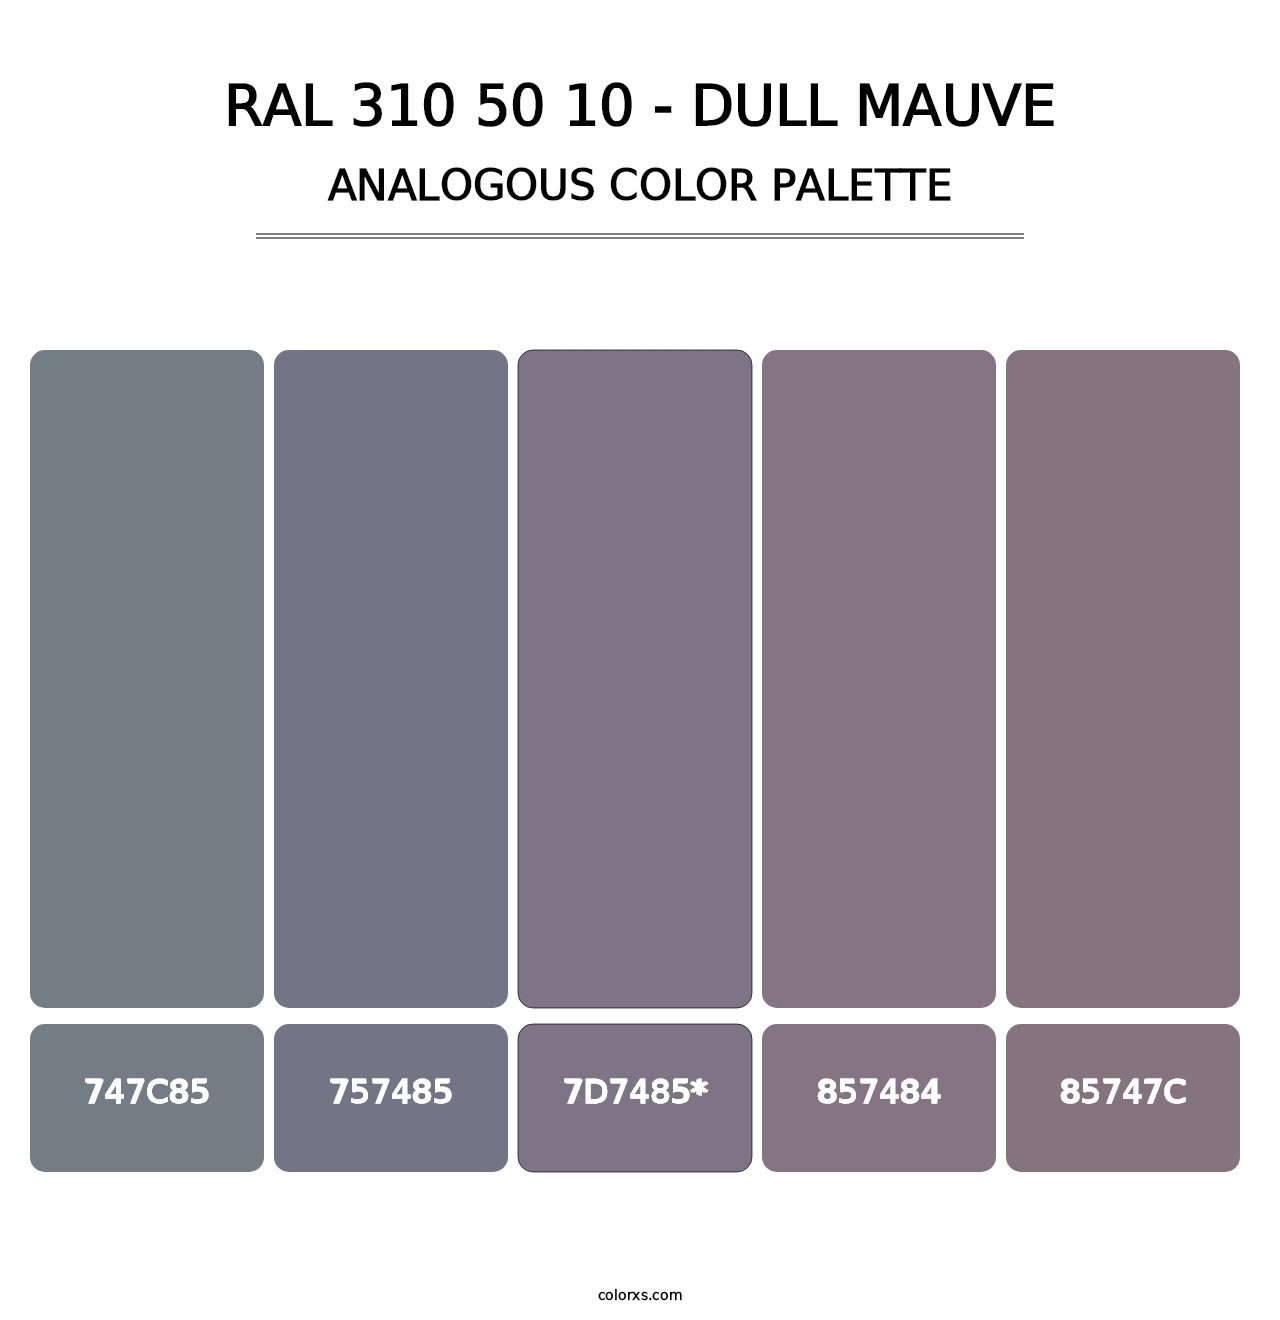 RAL 310 50 10 - Dull Mauve - Analogous Color Palette